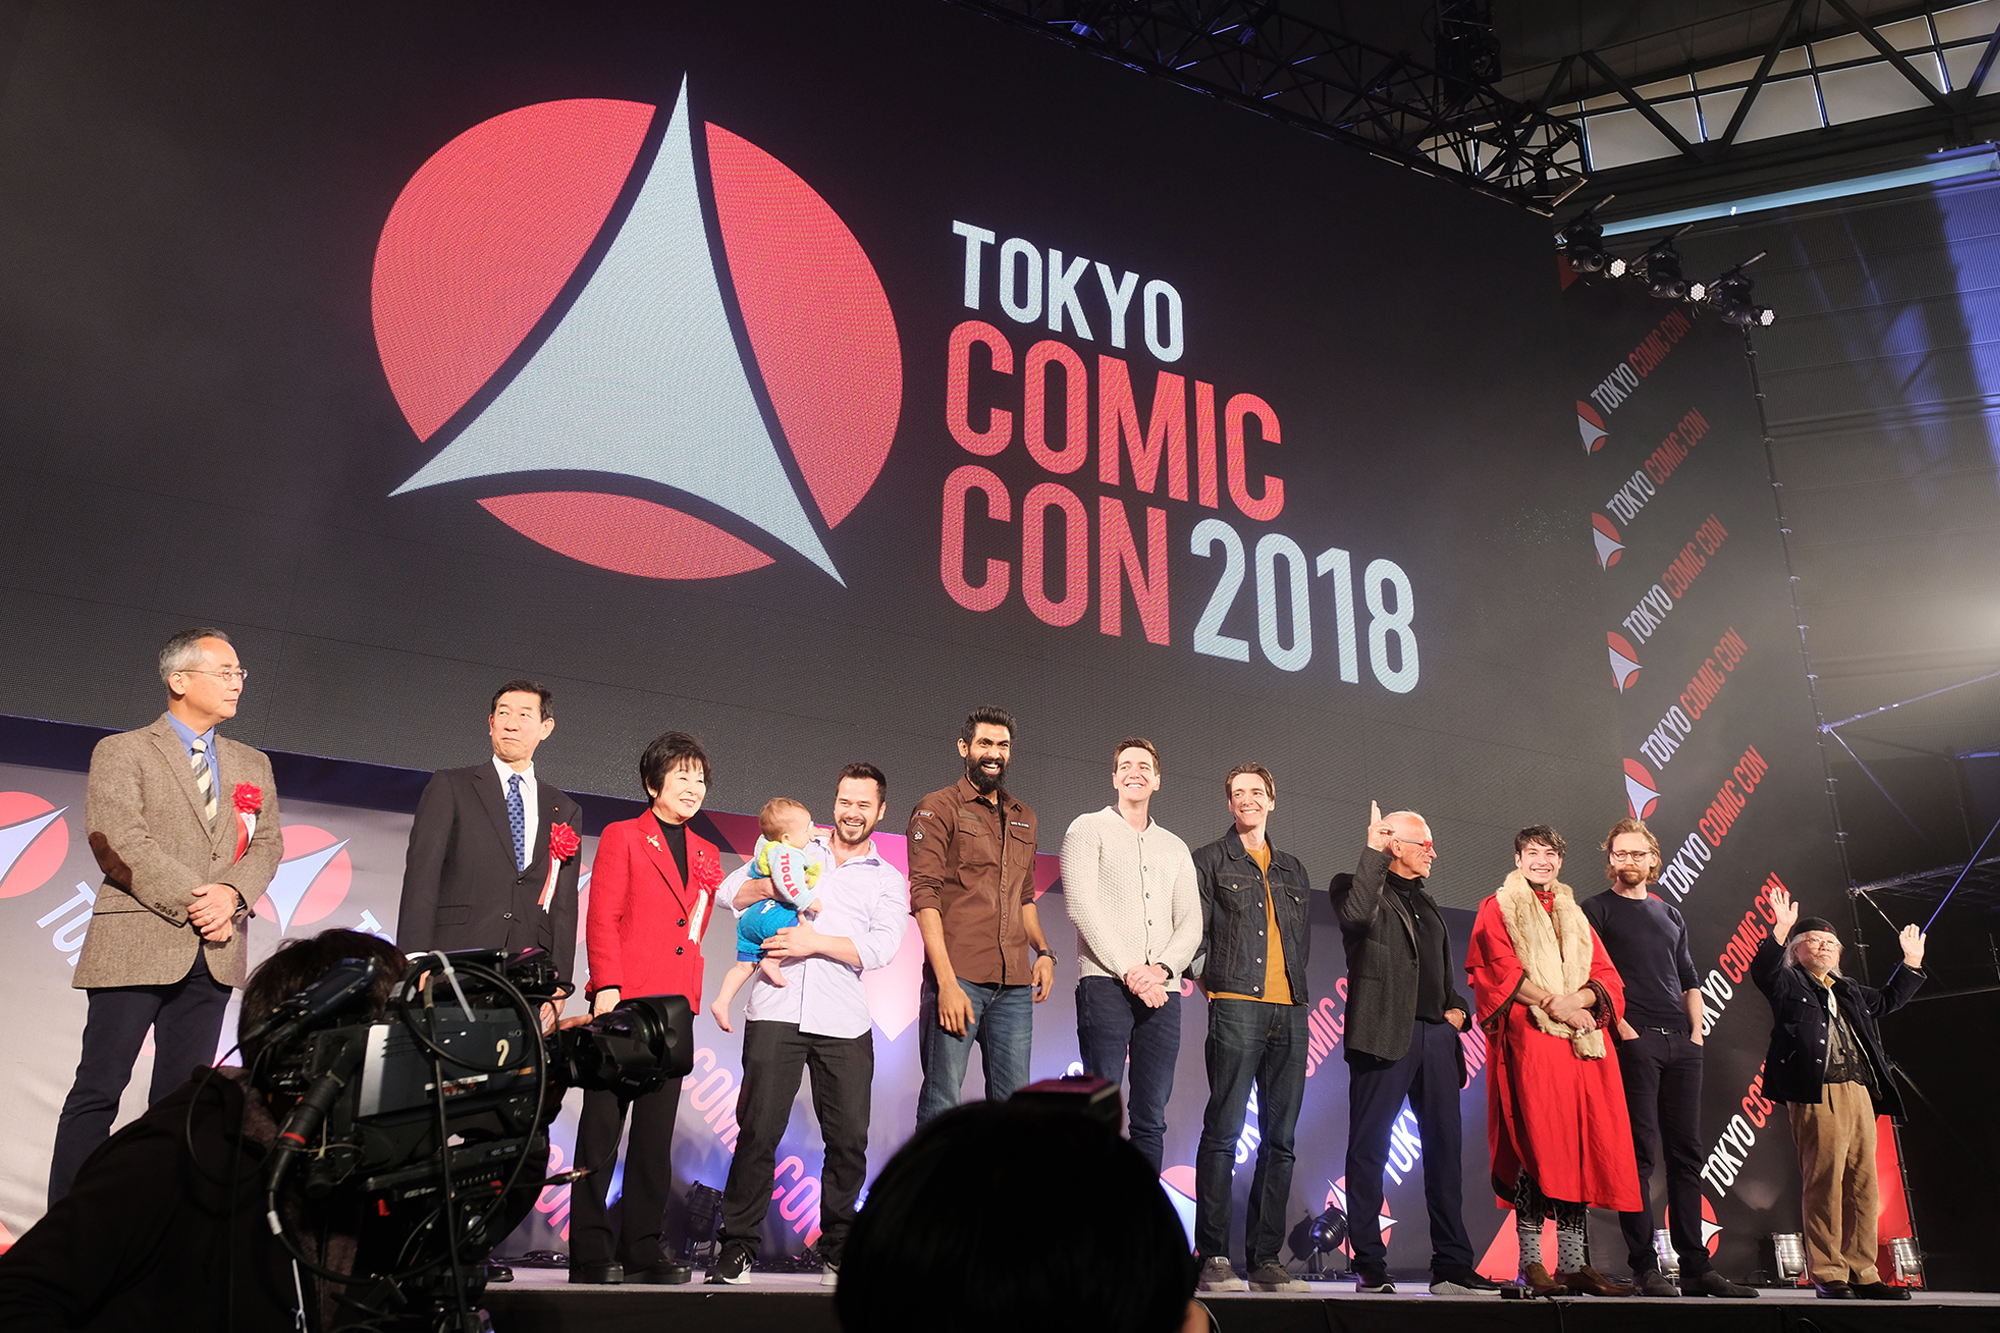 20181201【東京COMIC CON/Event Reports】「東京COMIC CON 2018」熱狂のオープニングセレモニー Report！